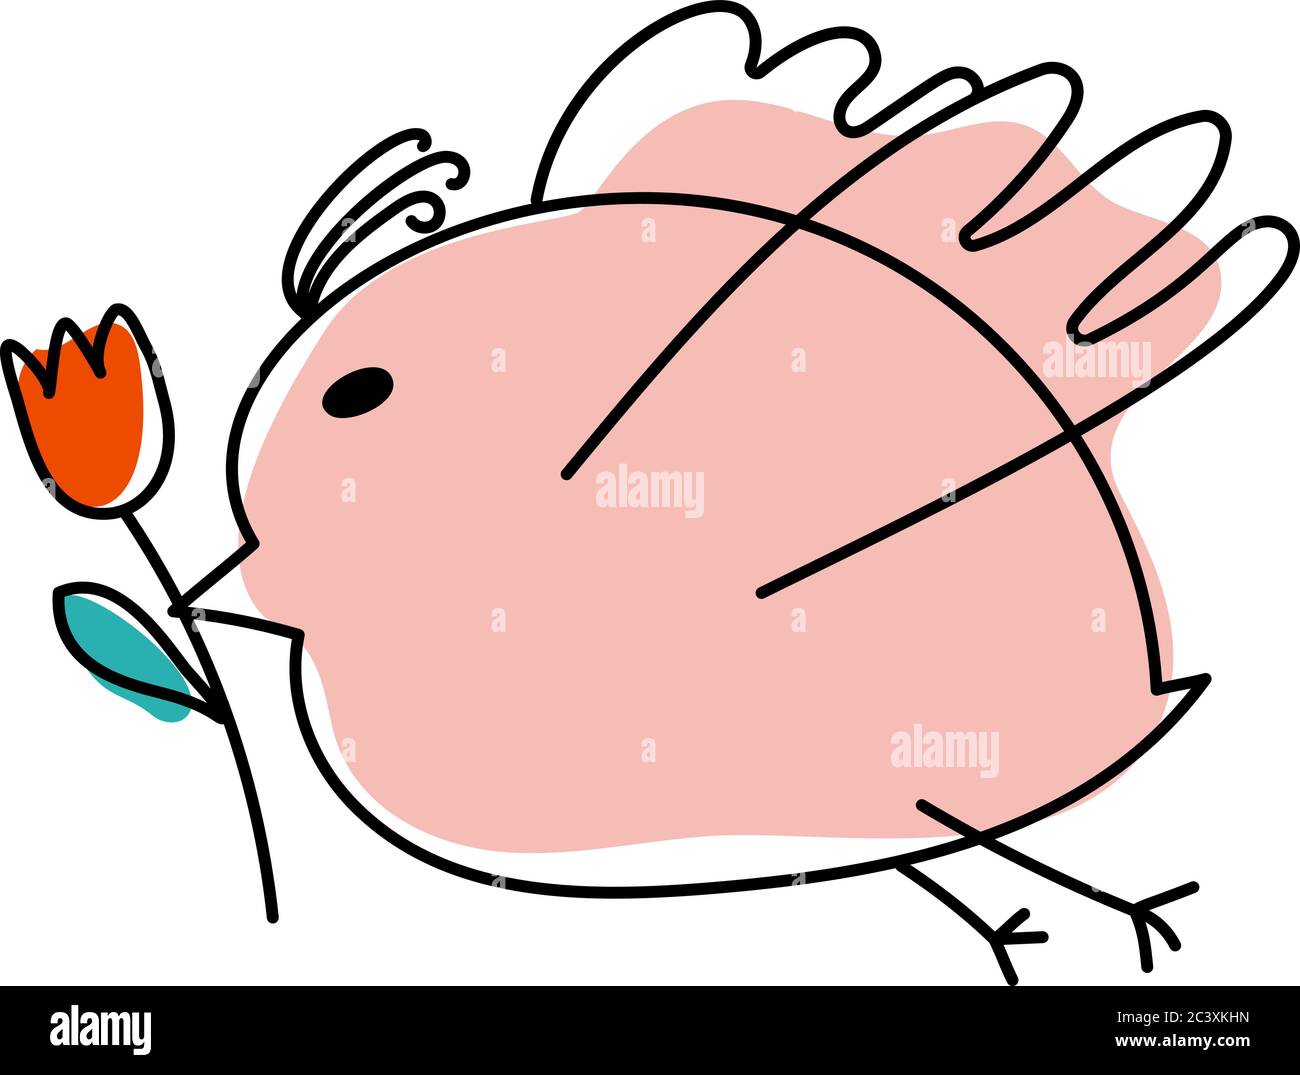 Vecteur volant mignon dessin animé gros oiseau avec fleur tulipe dans le bec. Oiseau en ligne dessiné à la main. Élément de conception pour enfants pour carte de vœux, livre, affiche ou Illustration de Vecteur